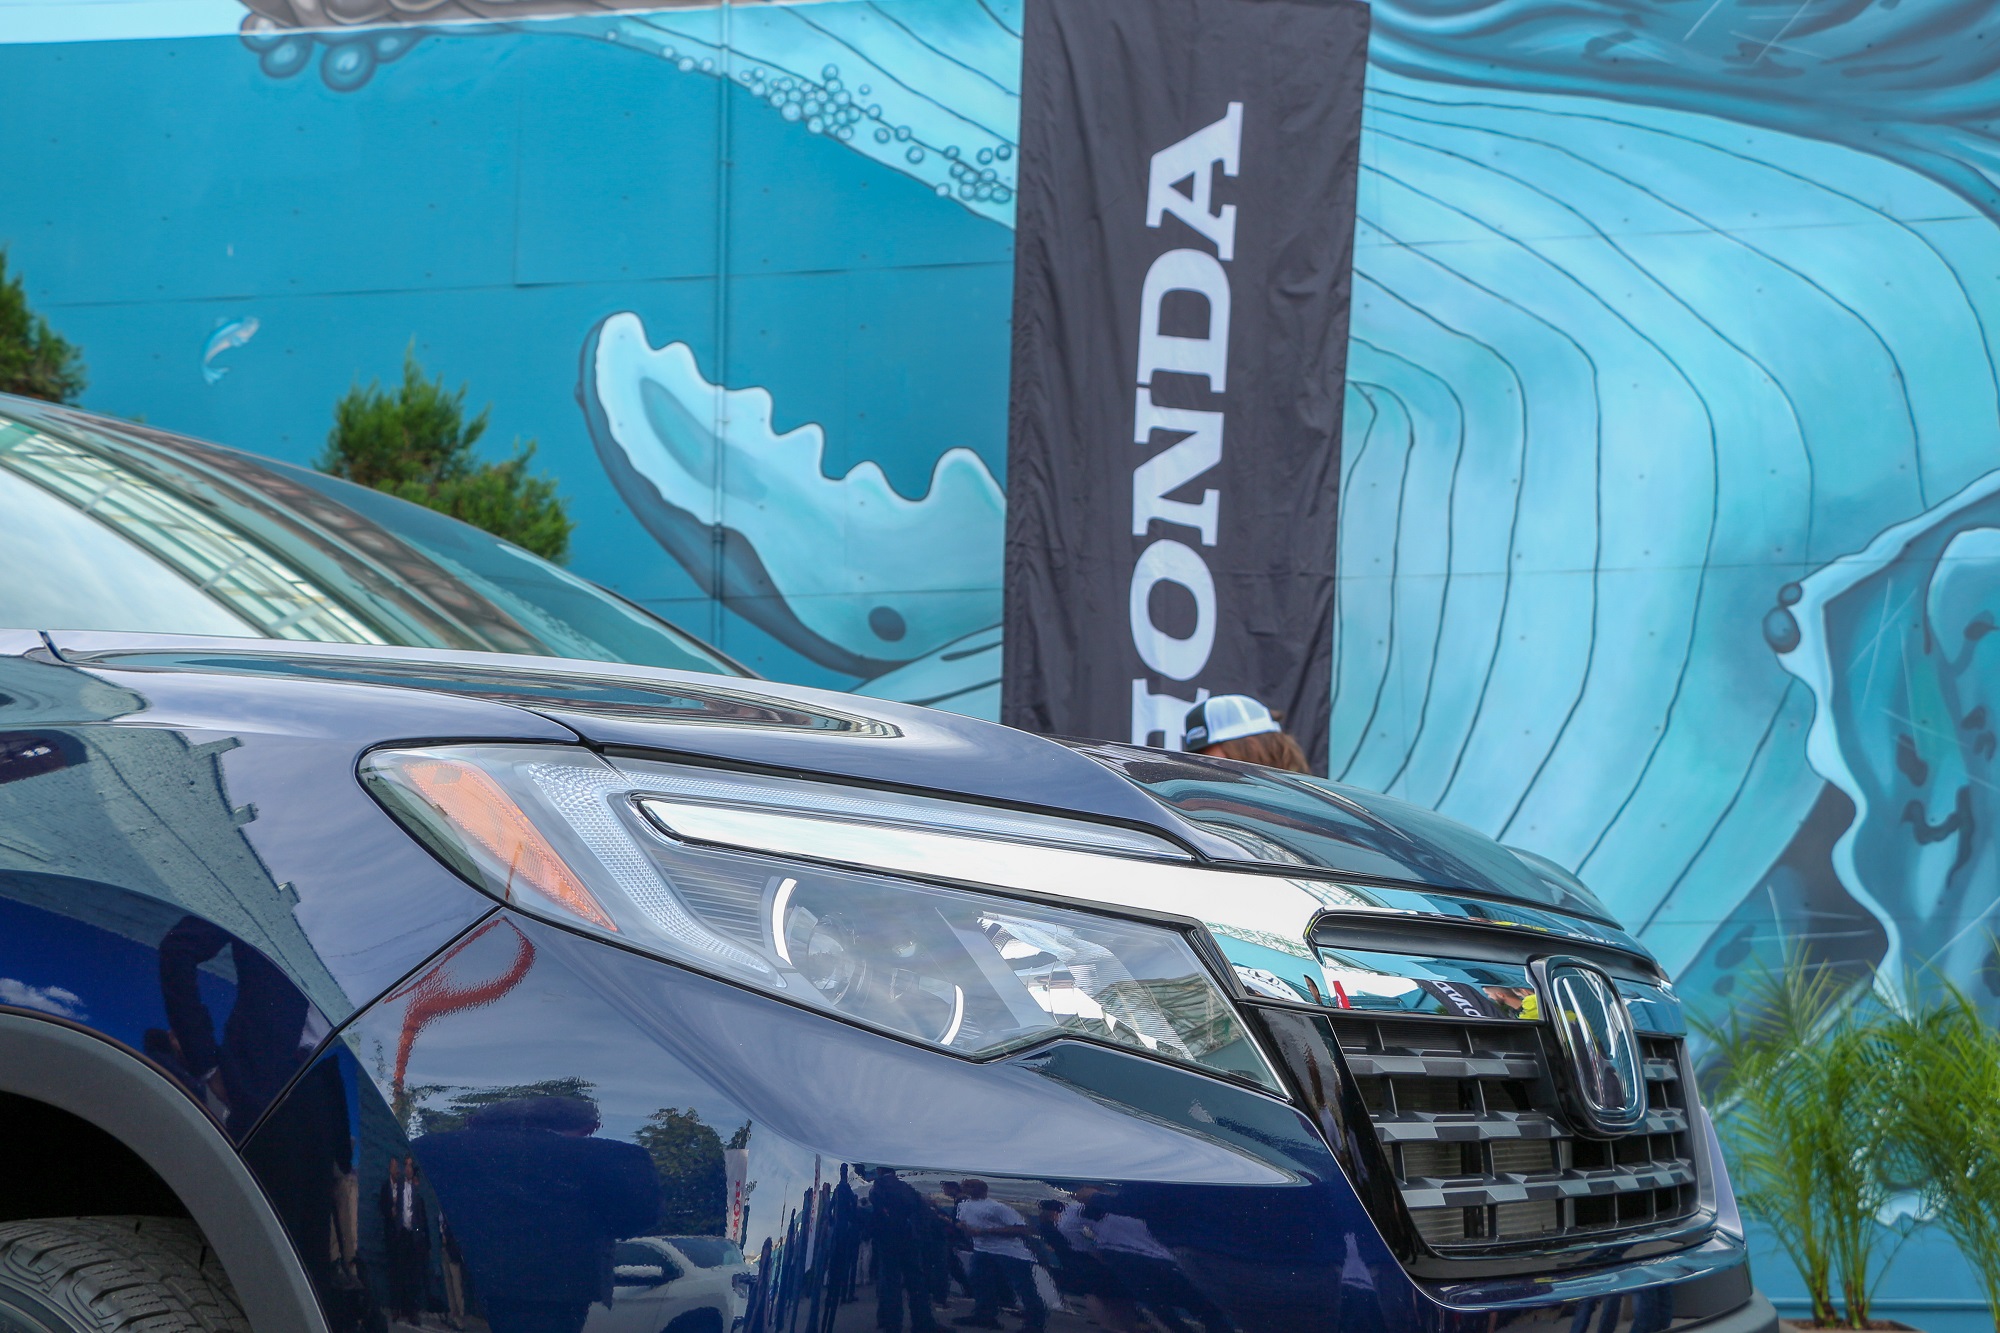 2019 Honda Passport SUV Reveal LA Auto Show Honda-tech.com